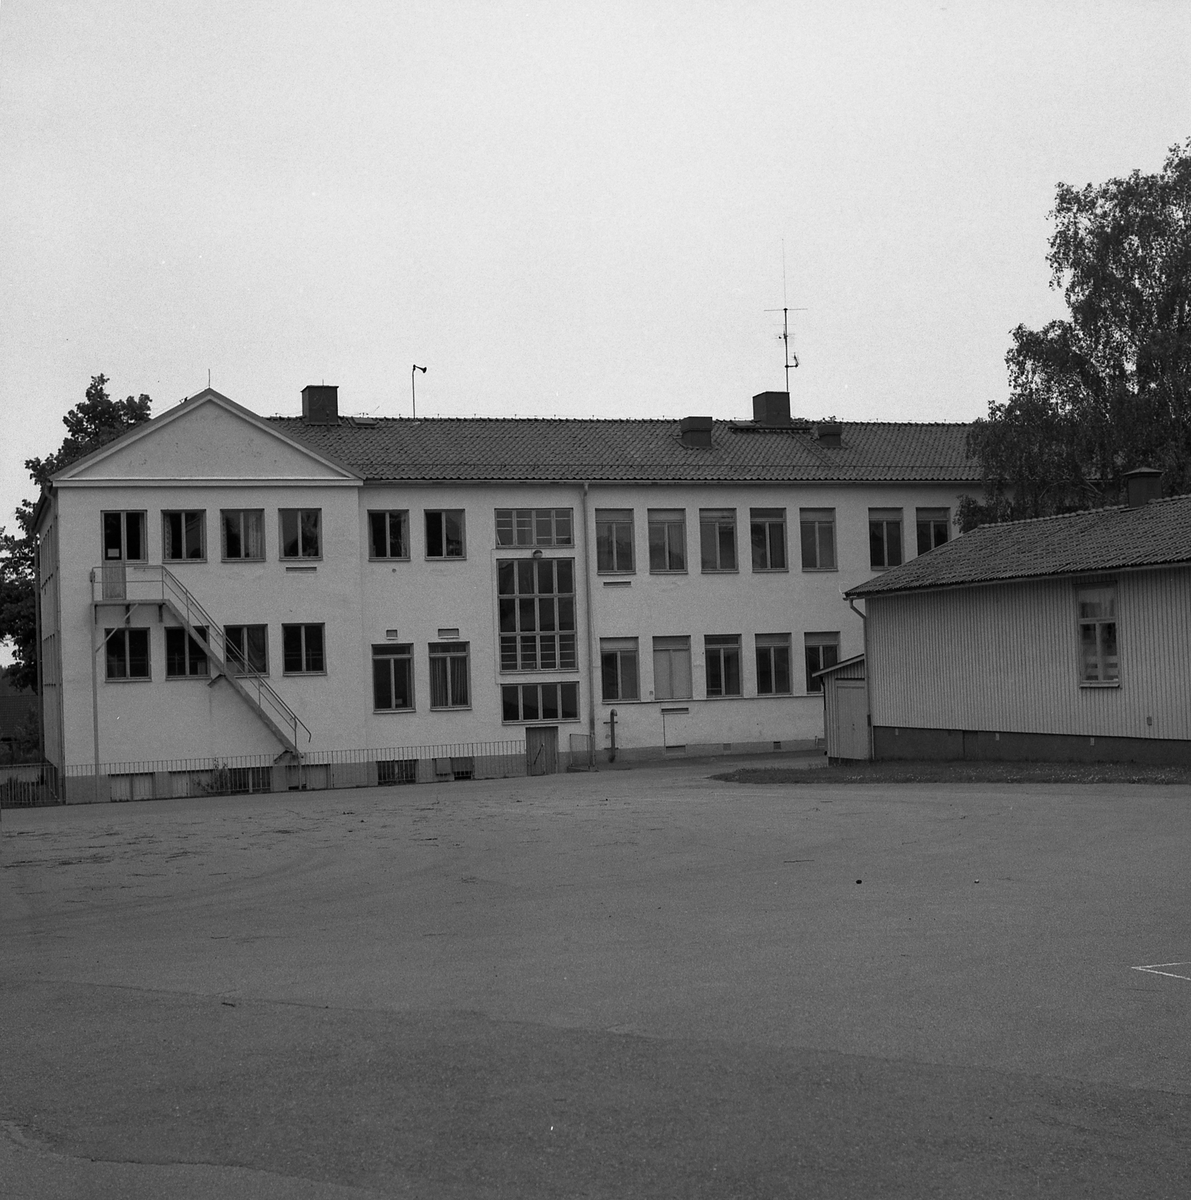 Orig. text: Kärna skola. Baksidan av den äldsta byggnaden (se InJo29).